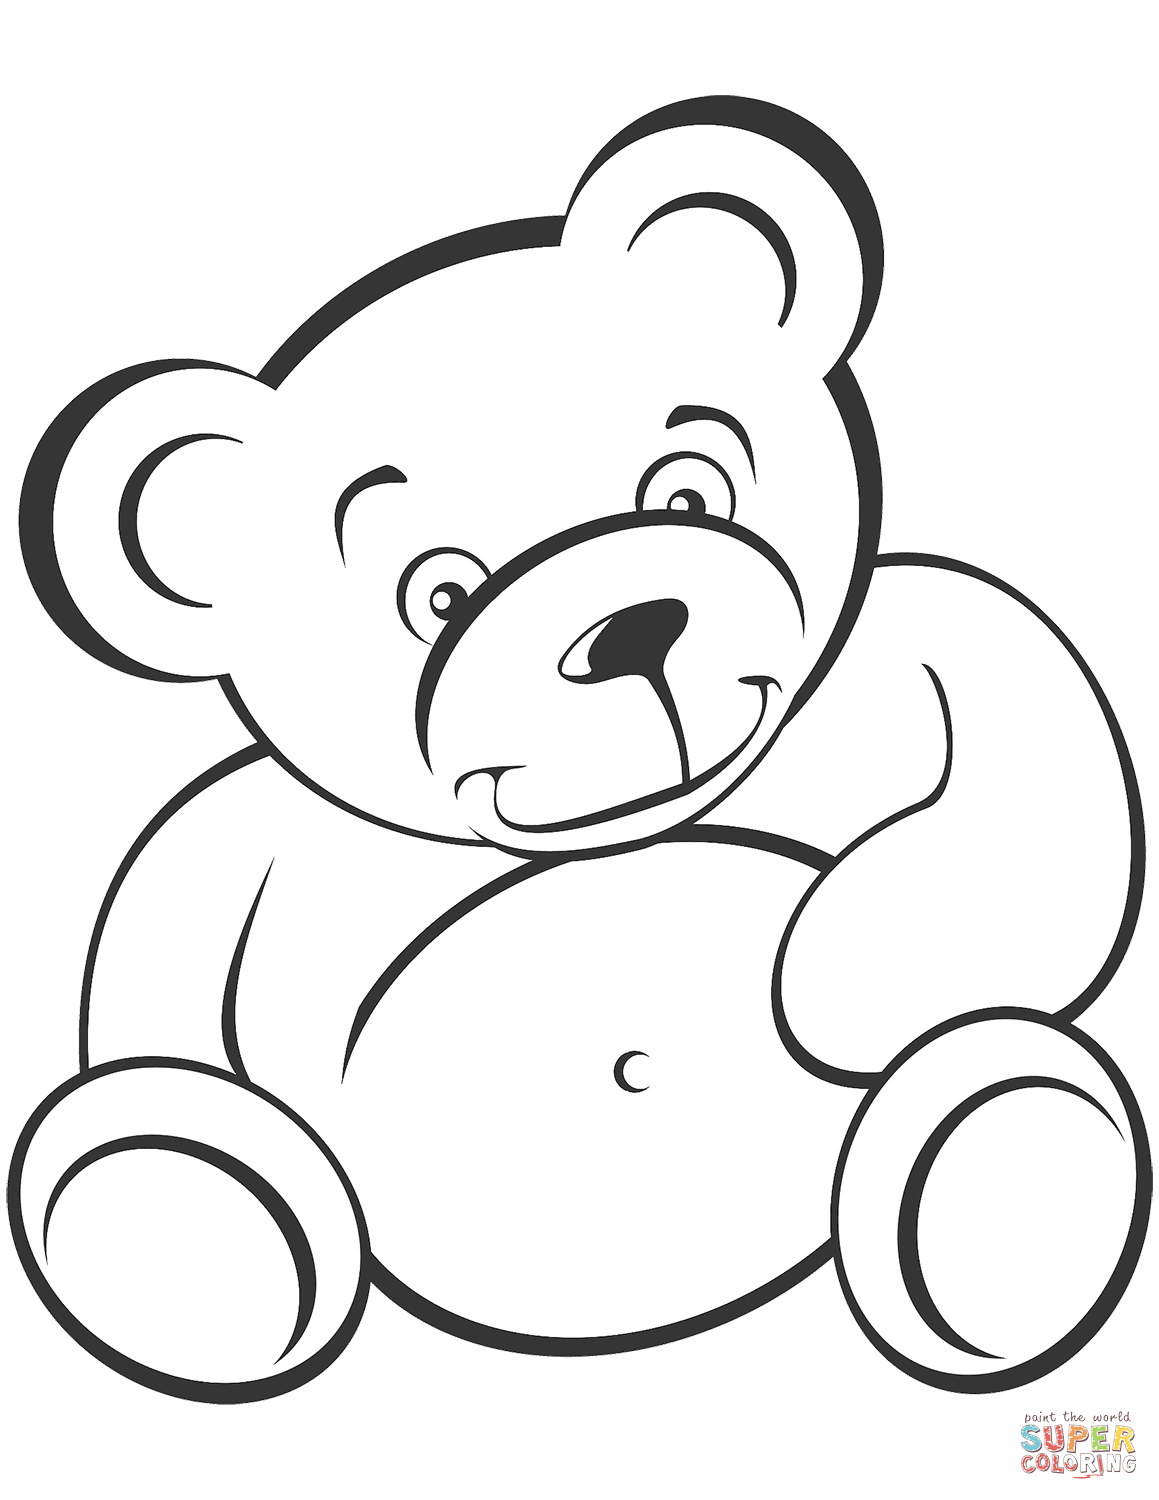 Ausmalbild: Teddybär | Ausmalbilder Kostenlos Zum Ausdrucken innen Teddybär Malvorlage